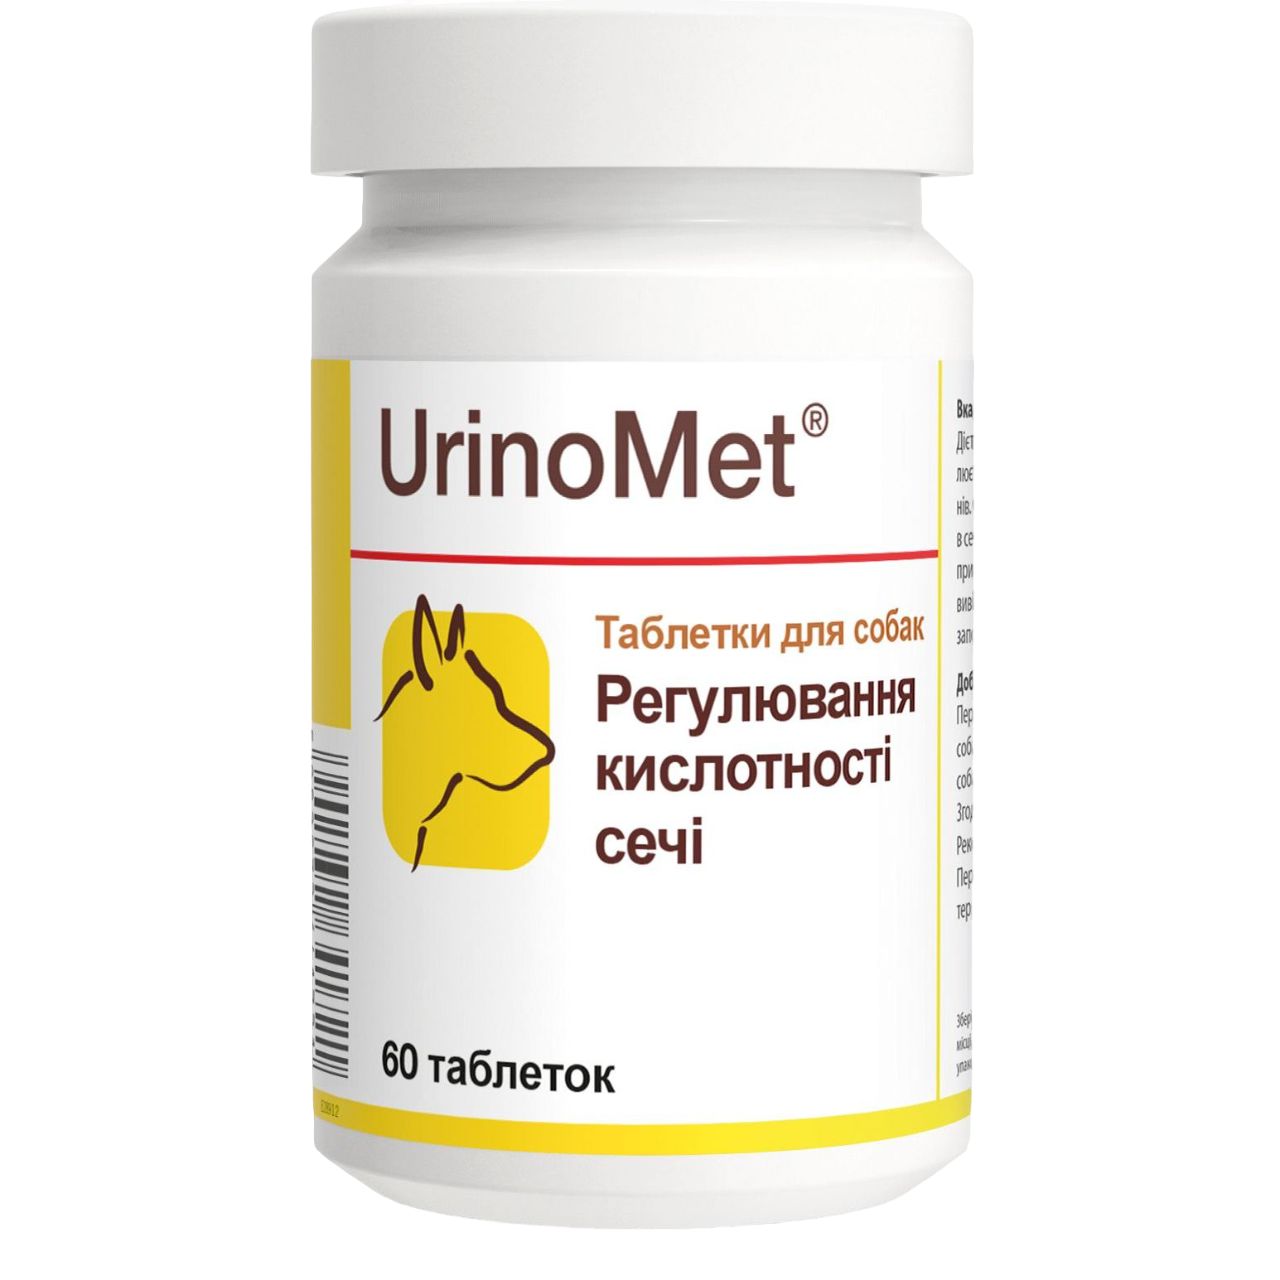 Витаминно-минеральная добавка Dolfos UrinoMet при заболеваниях мочевыводящих путей для собак, 60 таблеток - фото 1